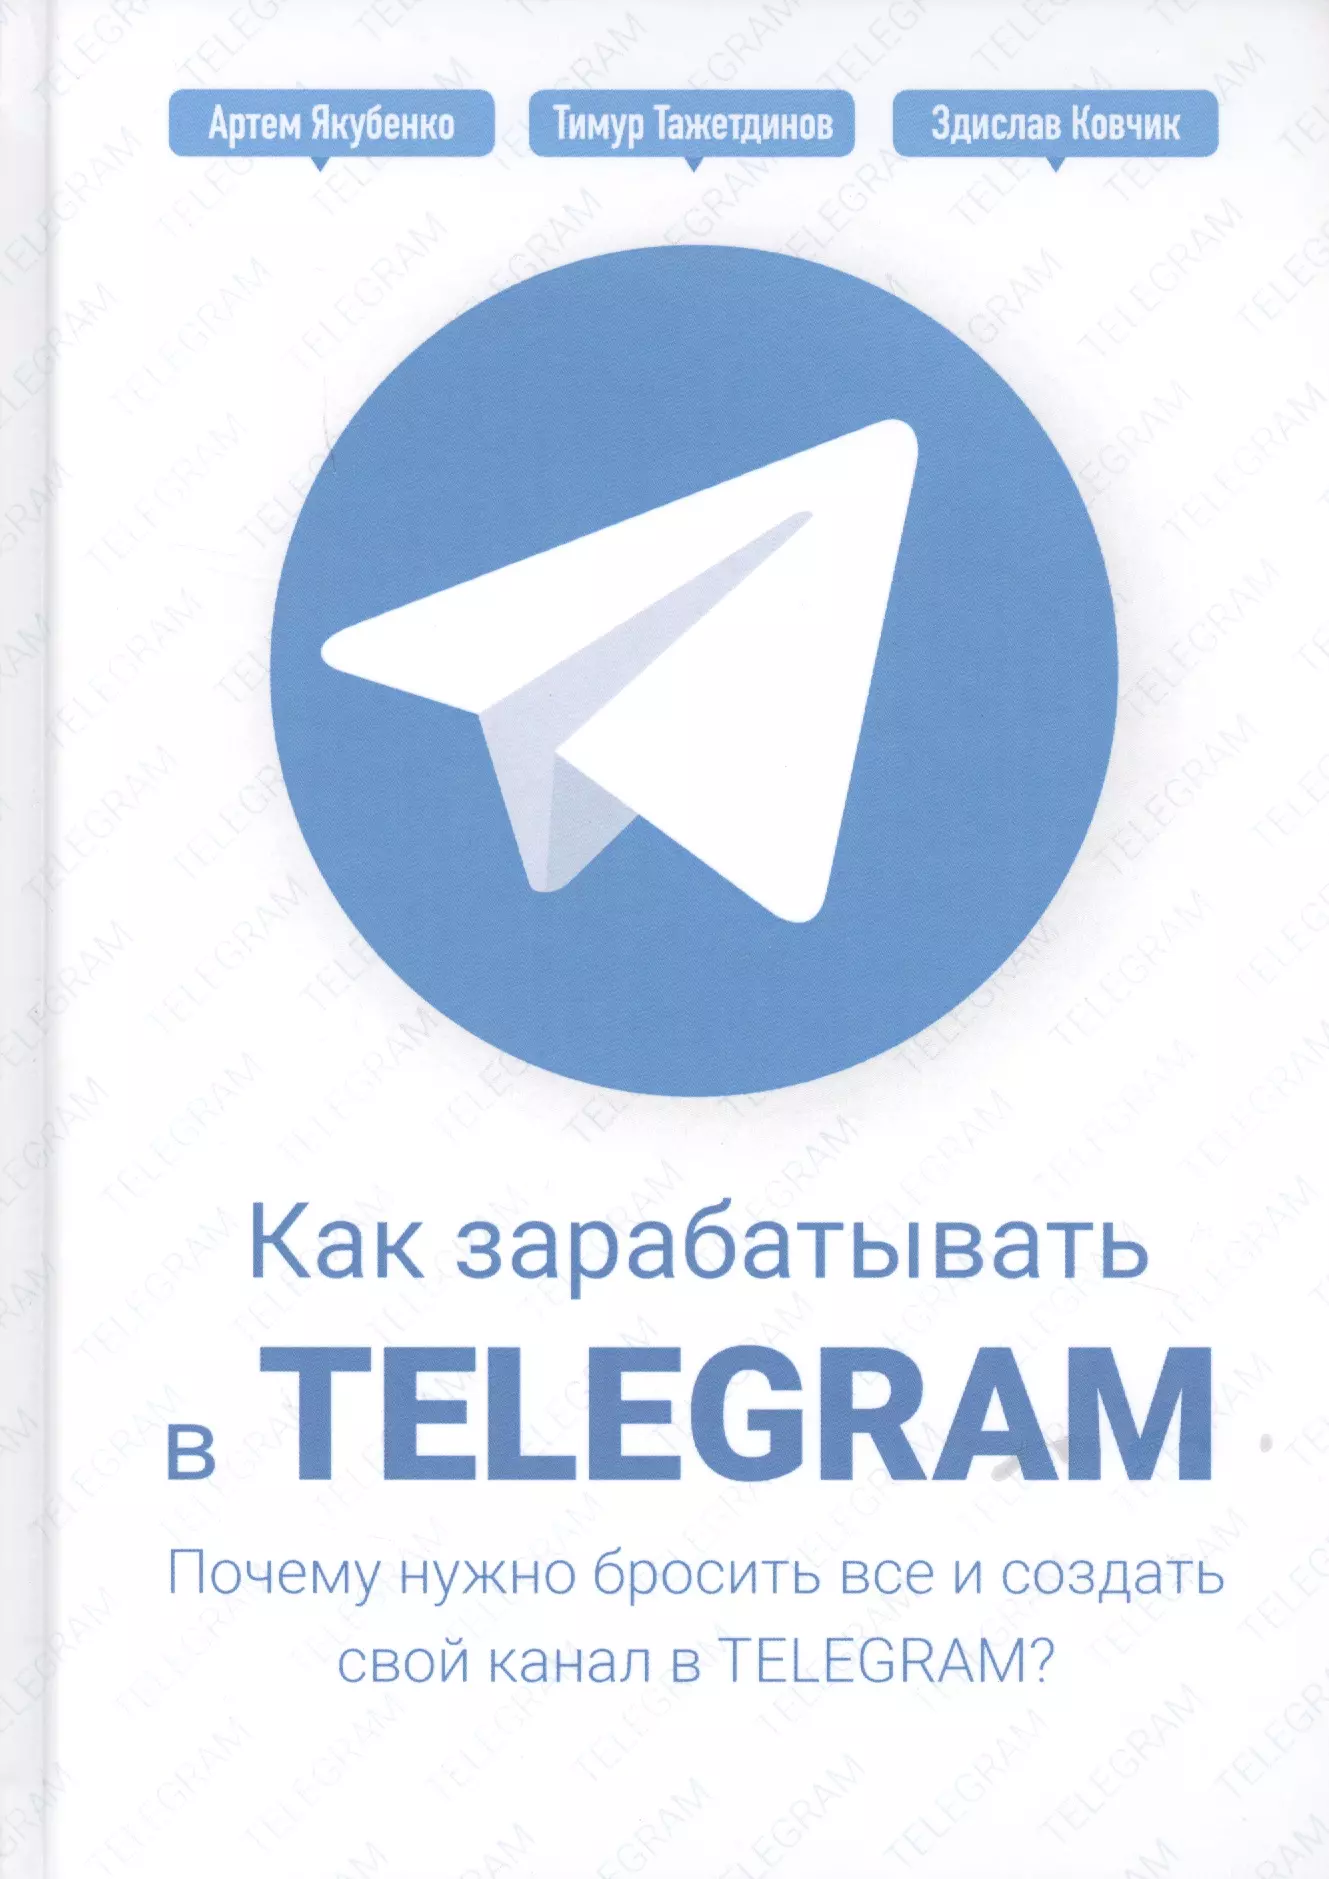 Тажетдинов Тимур - Как зарабатывать в Telegram. Почему нужно бросить все и создать свой канал в Telegram?